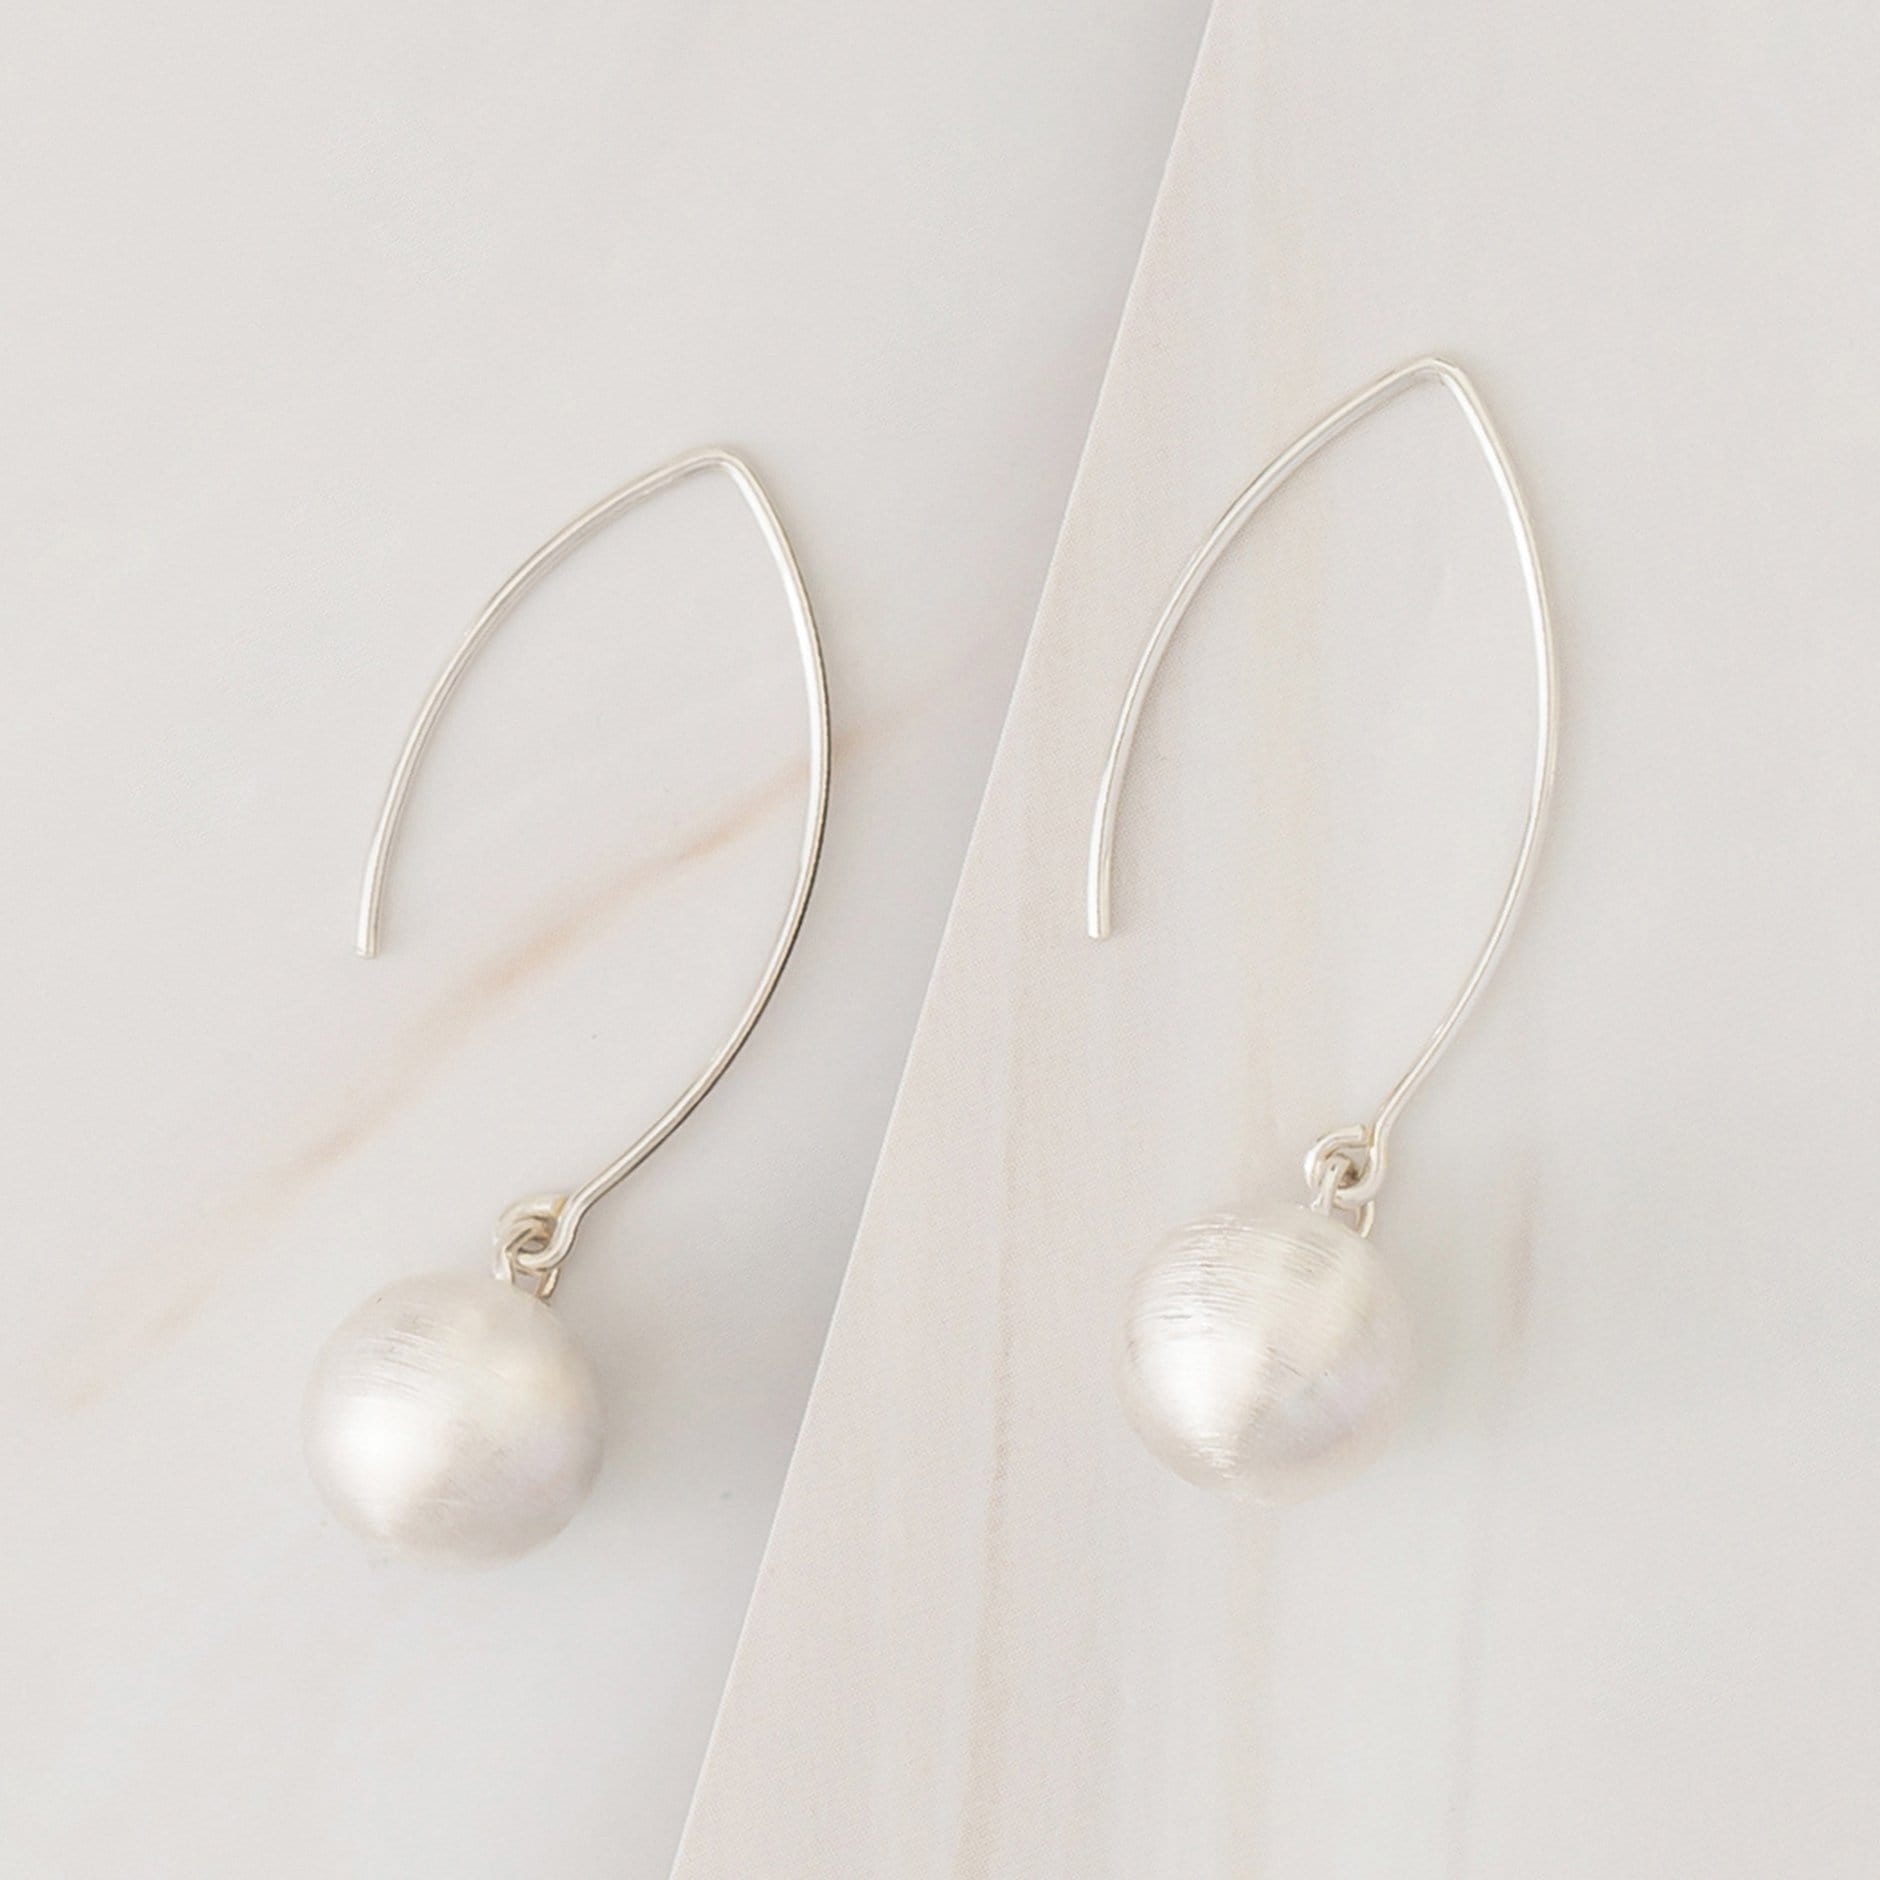 Emblem Jewelry Earrings Silver Tone / 10 mm Terrene Dancing Matte Ball Drop Earrings